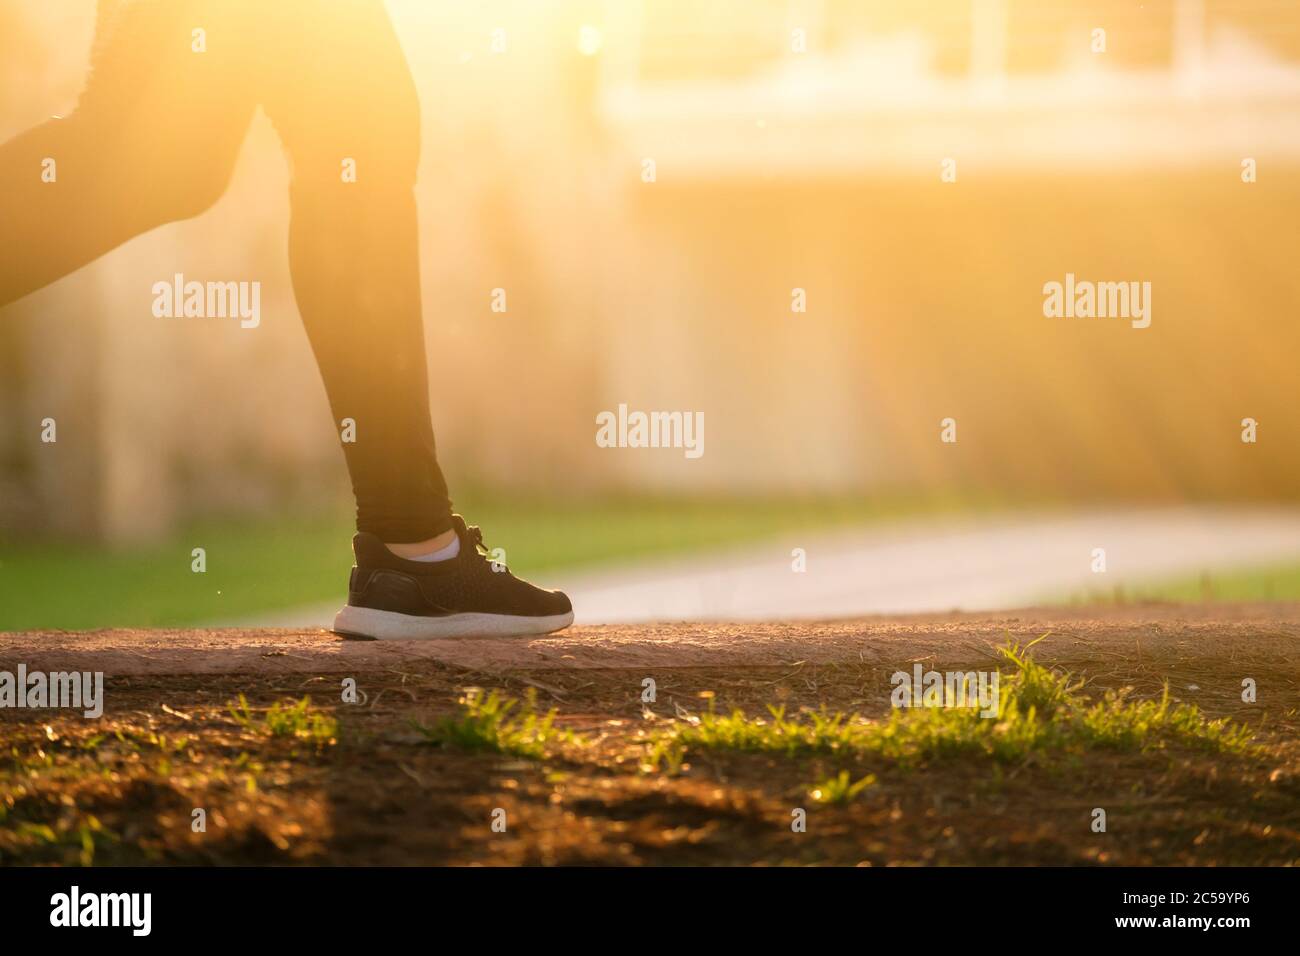 mujer corredor mientras corres, luz de fondo borrosa movimiento practicar deporte fitness y estilo de vida saludable concepto Foto de stock